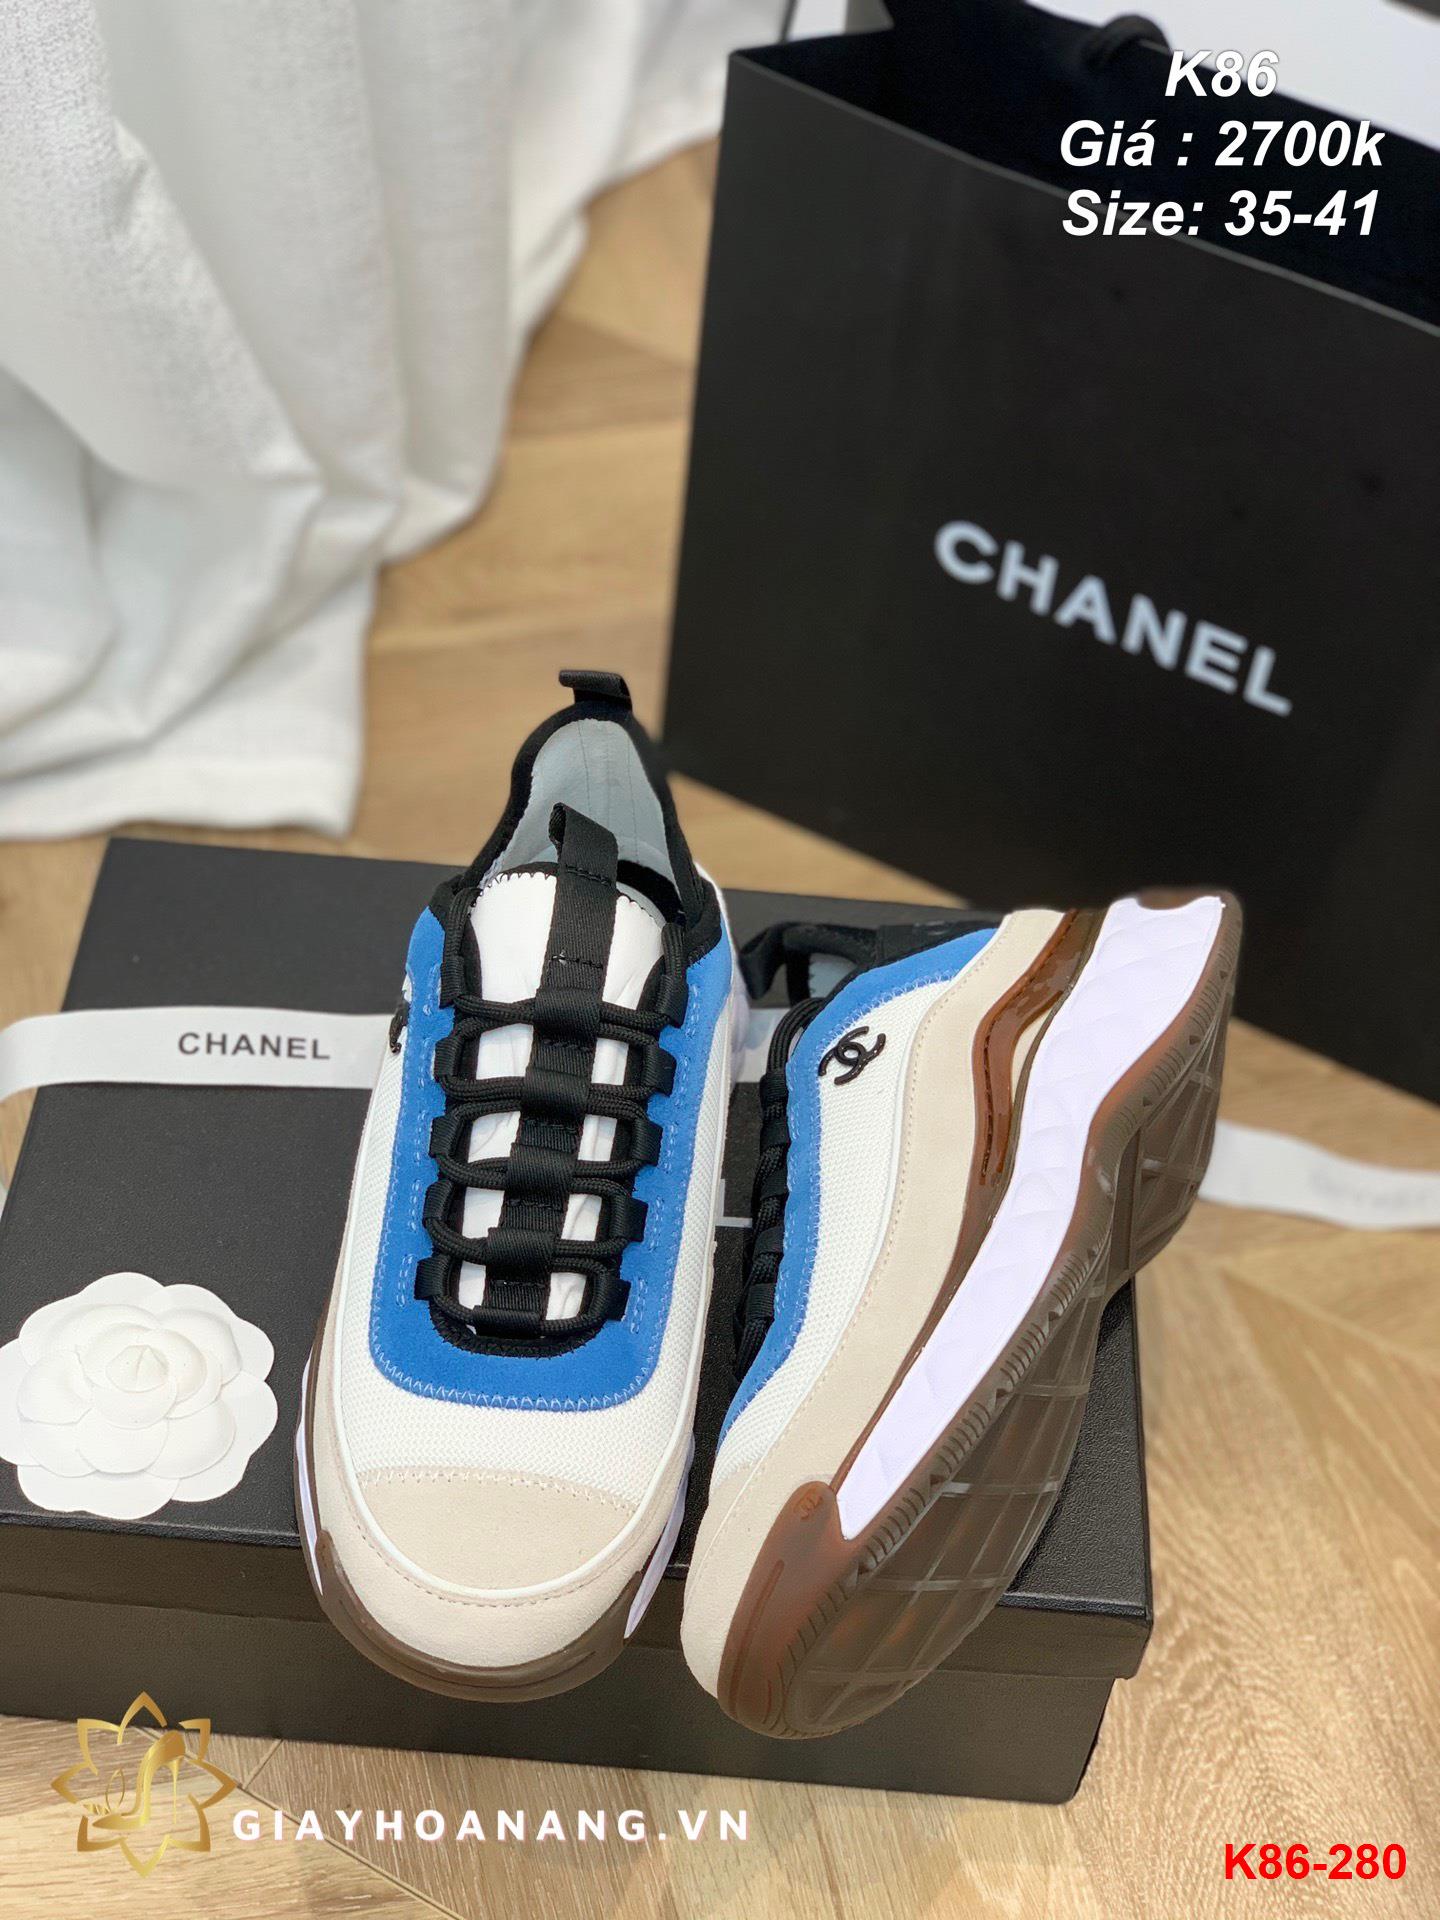 K86-280 Chanel giày thể thao siêu cấp